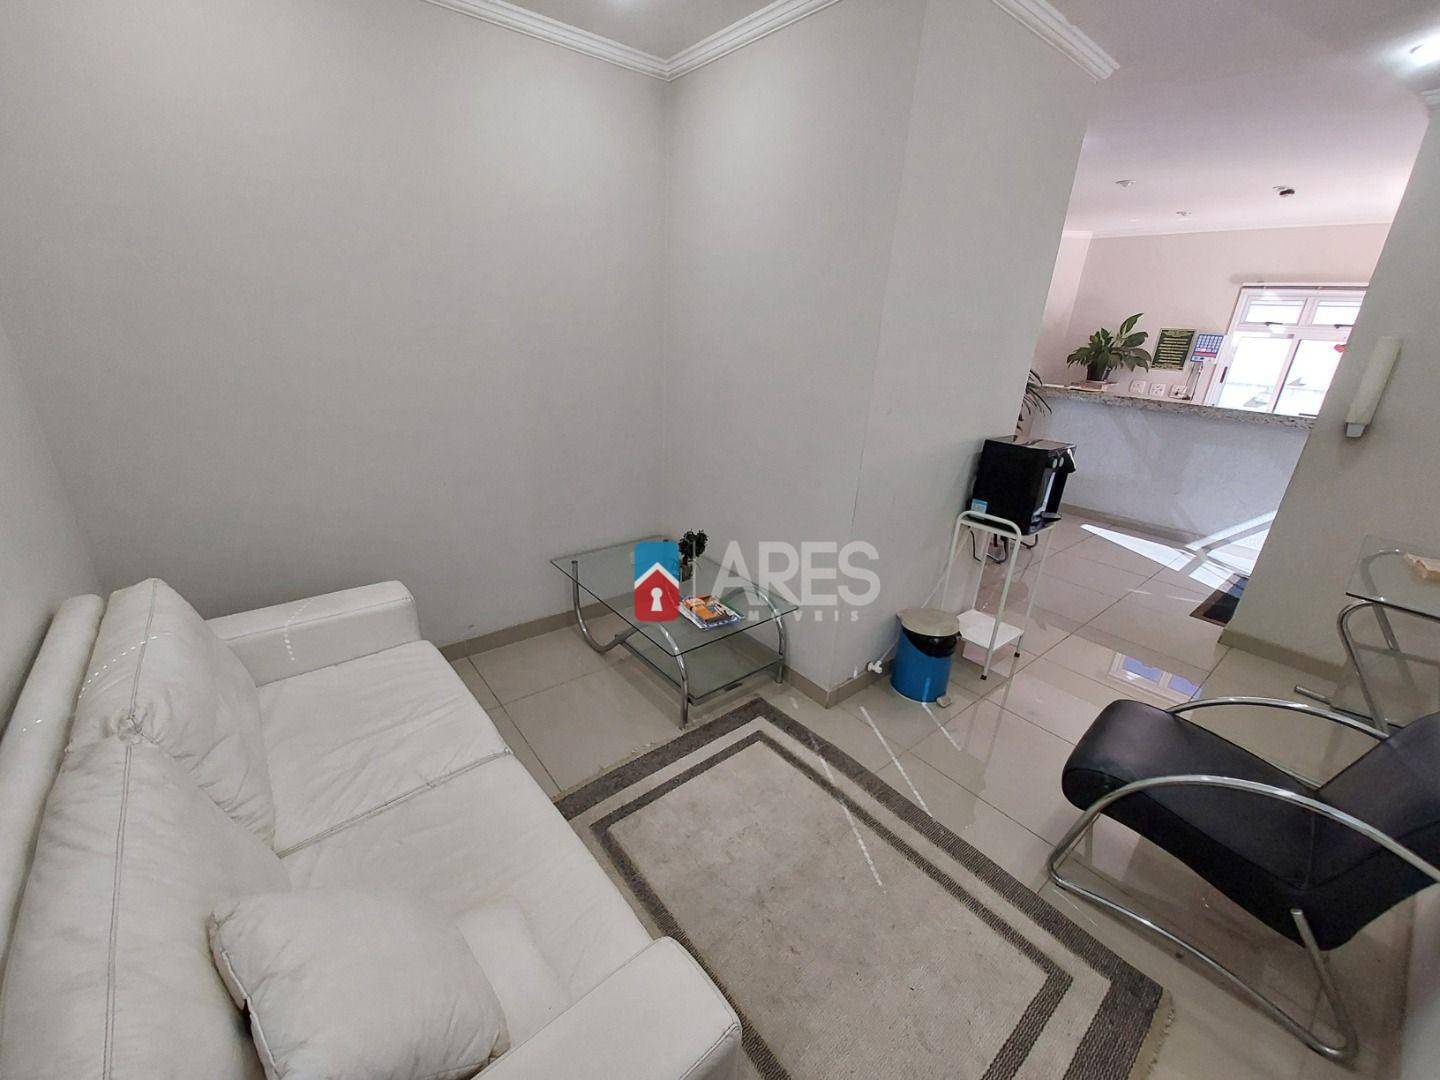 Apartamento, 1 quarto, 40 m² - Foto 2